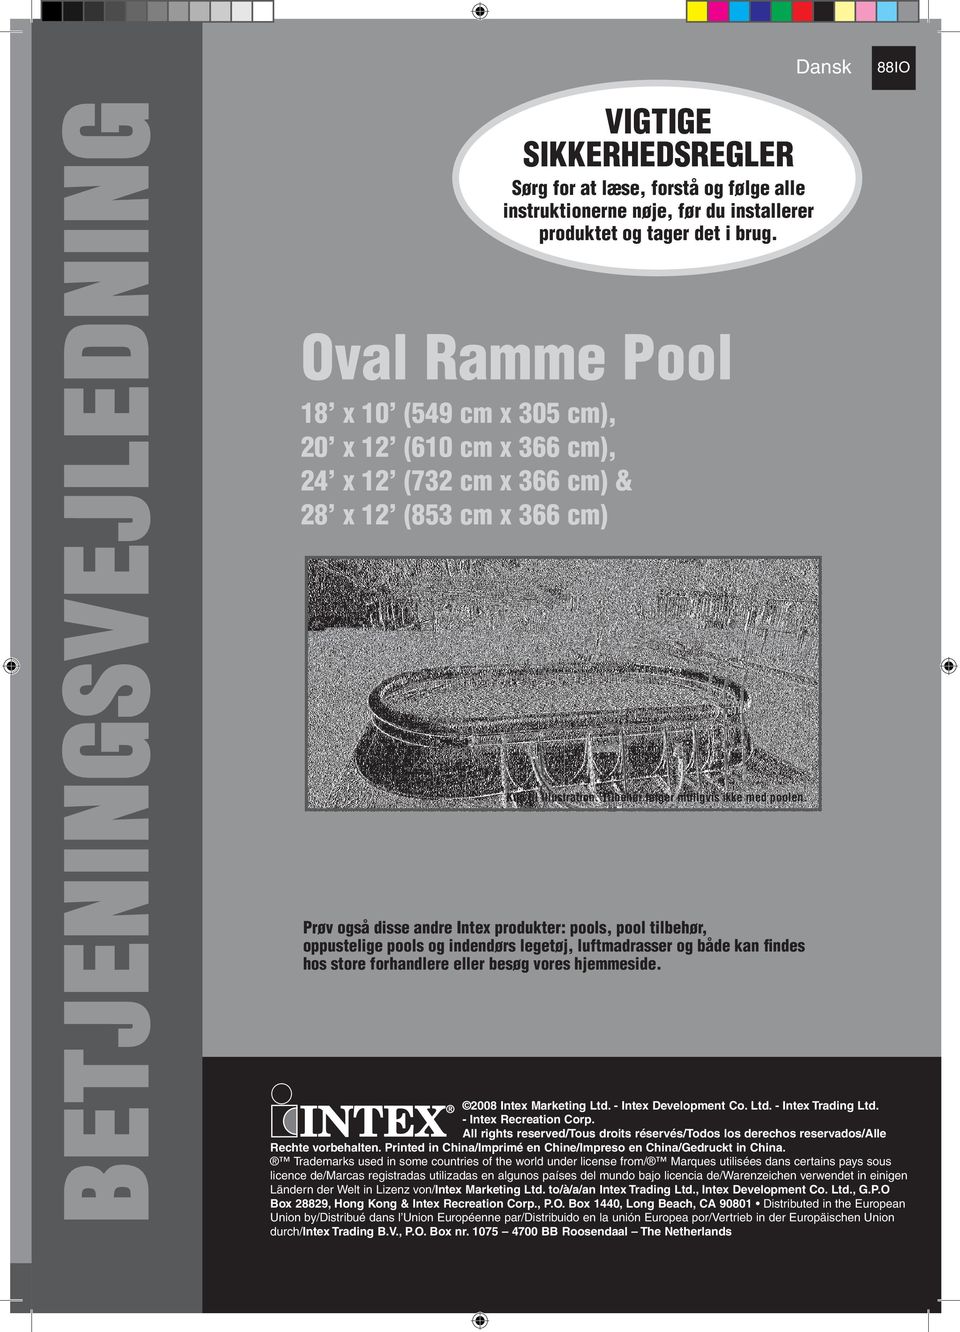 Oval Ramme Pool x 0 (59 cm x 305 cm), 0 x (60 cm x 366 cm), x (73 cm x 366 cm) & x (53 cm x 366 cm) Kun til illustration. Tilbehør følger muligvis ikke med poolen.